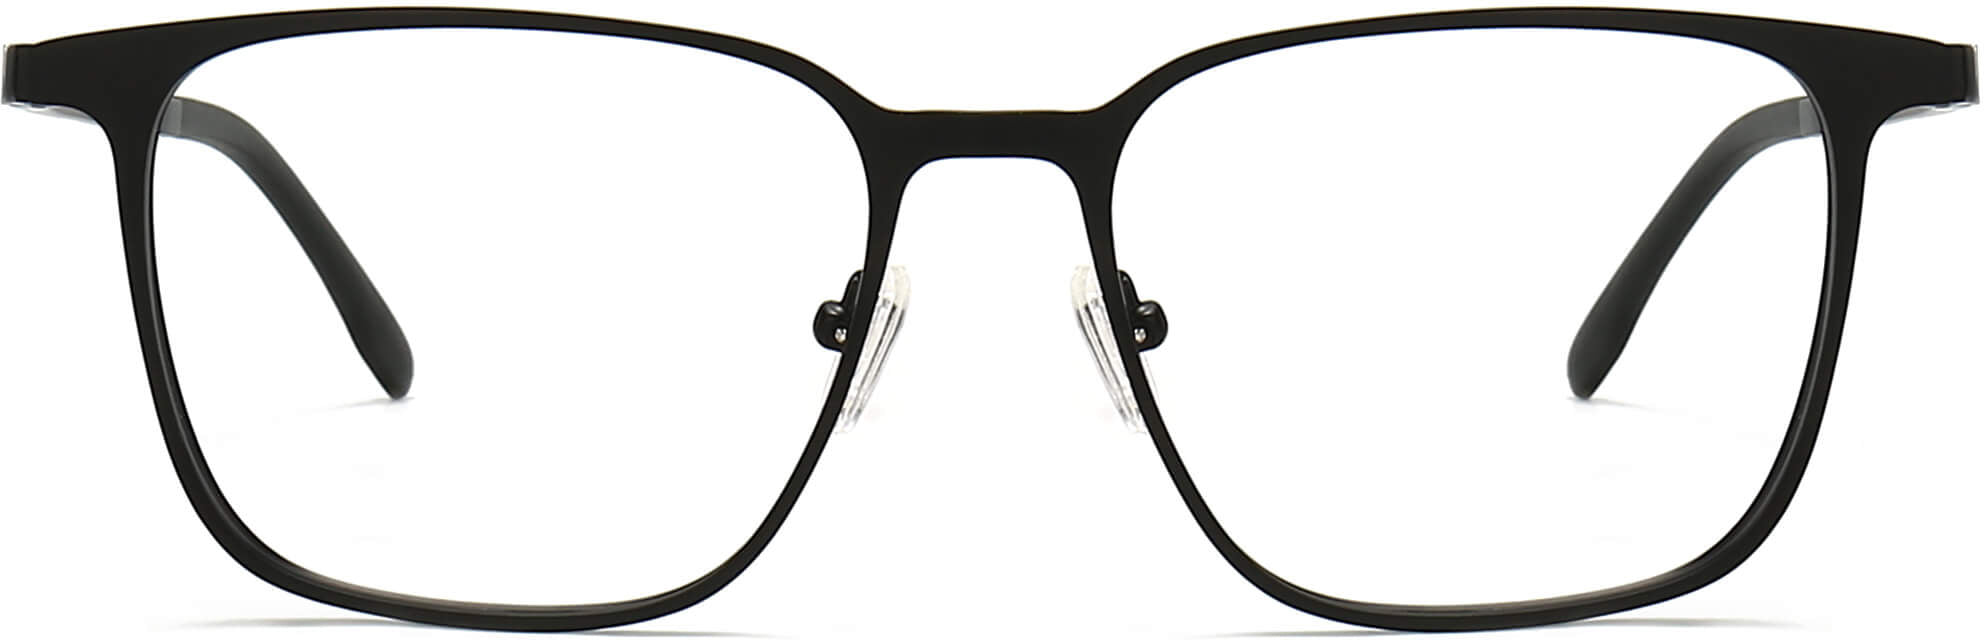 Adalyn Square Black Eyeglasses from ANRRI